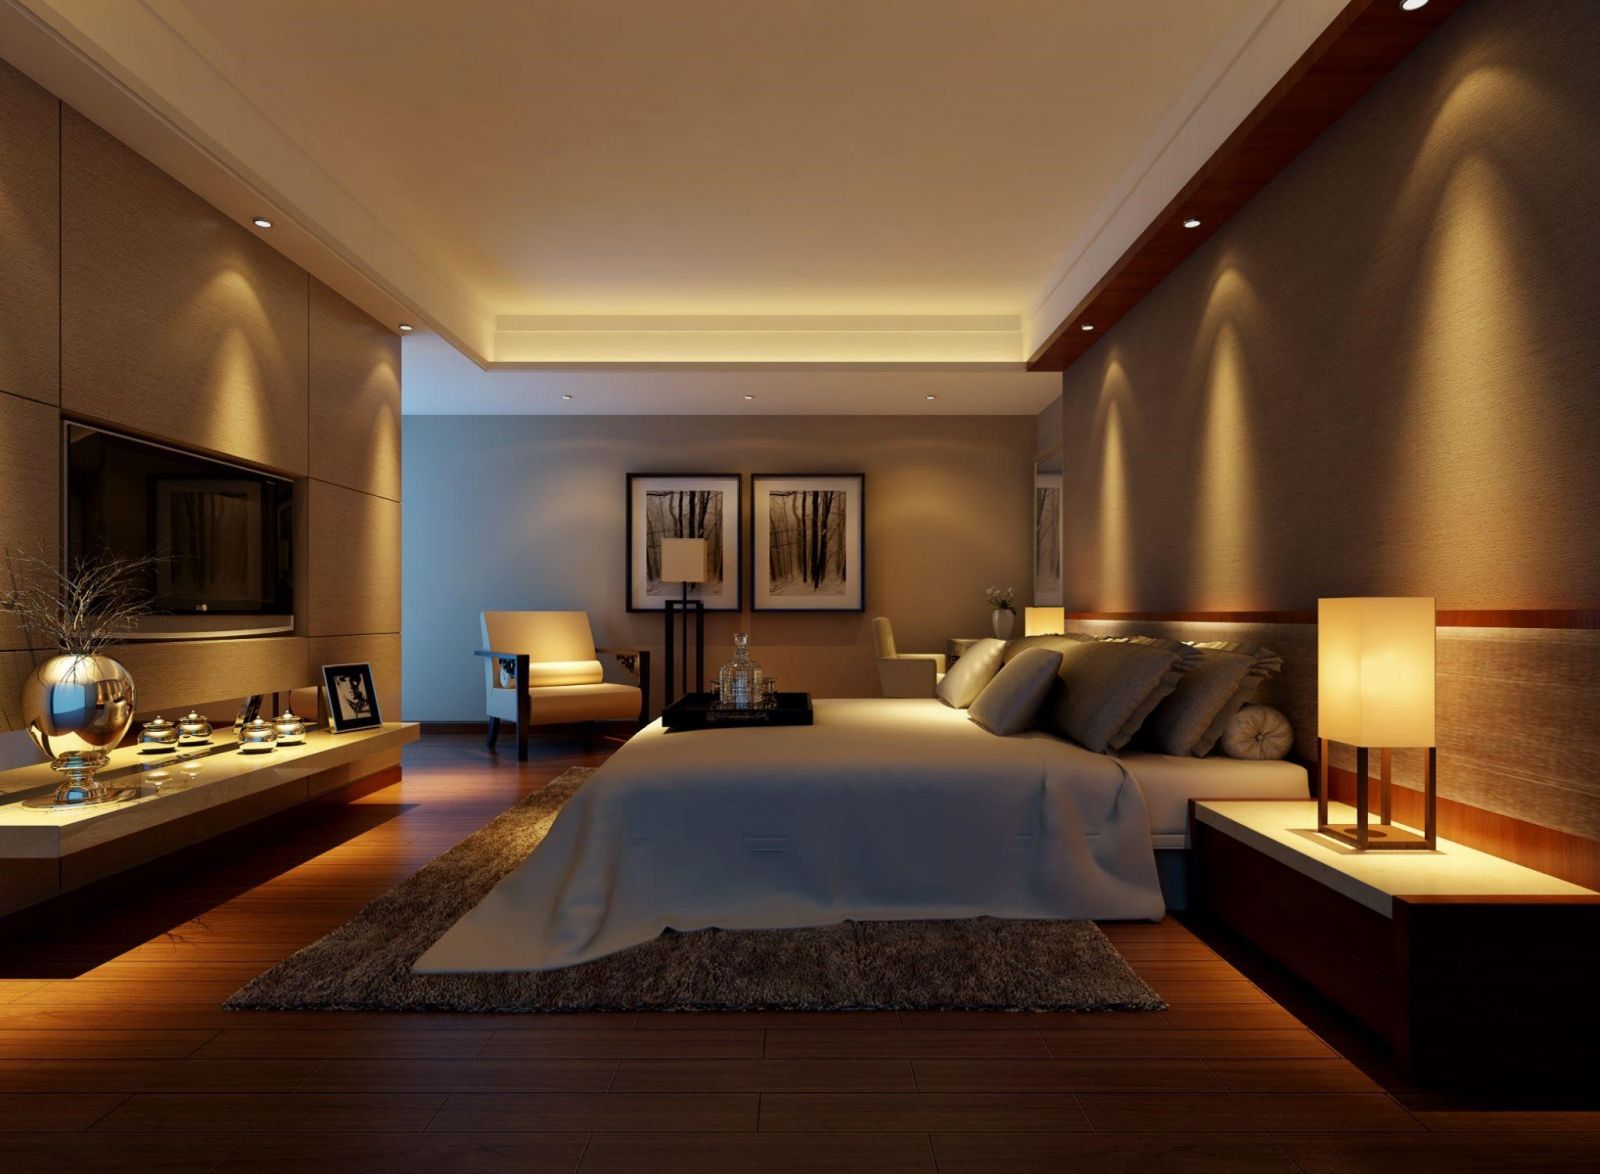 Mẫu trần thạch cao phòng ngủ hiện đại mang đến sự đổi mới về kiểu dáng và phong cách, đồng thời mang lại cảm giác thư giãn tuyệt vời cho người dùng. Với những mẫu trần dành cho phòng ngủ, bạn sẽ cảm nhận được sự khác biệt trong không gian sống của mình.